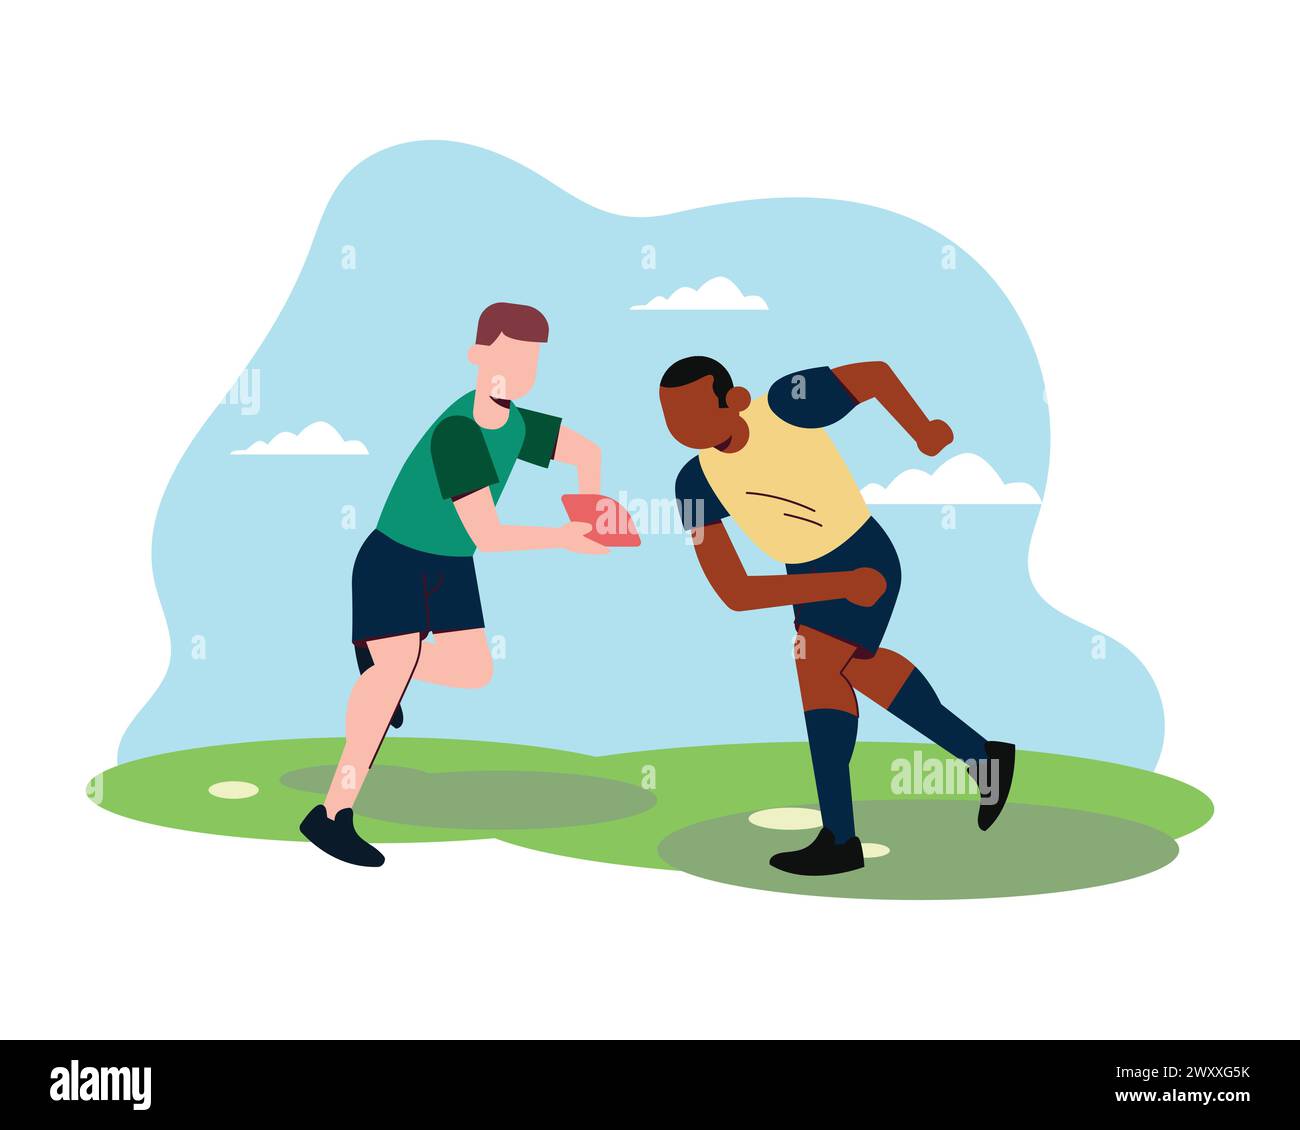 La silhouette di due giocatori maschi di rugby isolati su sfondo bianco. Ripresa in studio di uomini in movimento o in movimento con la palla. Illustrazione Vettoriale